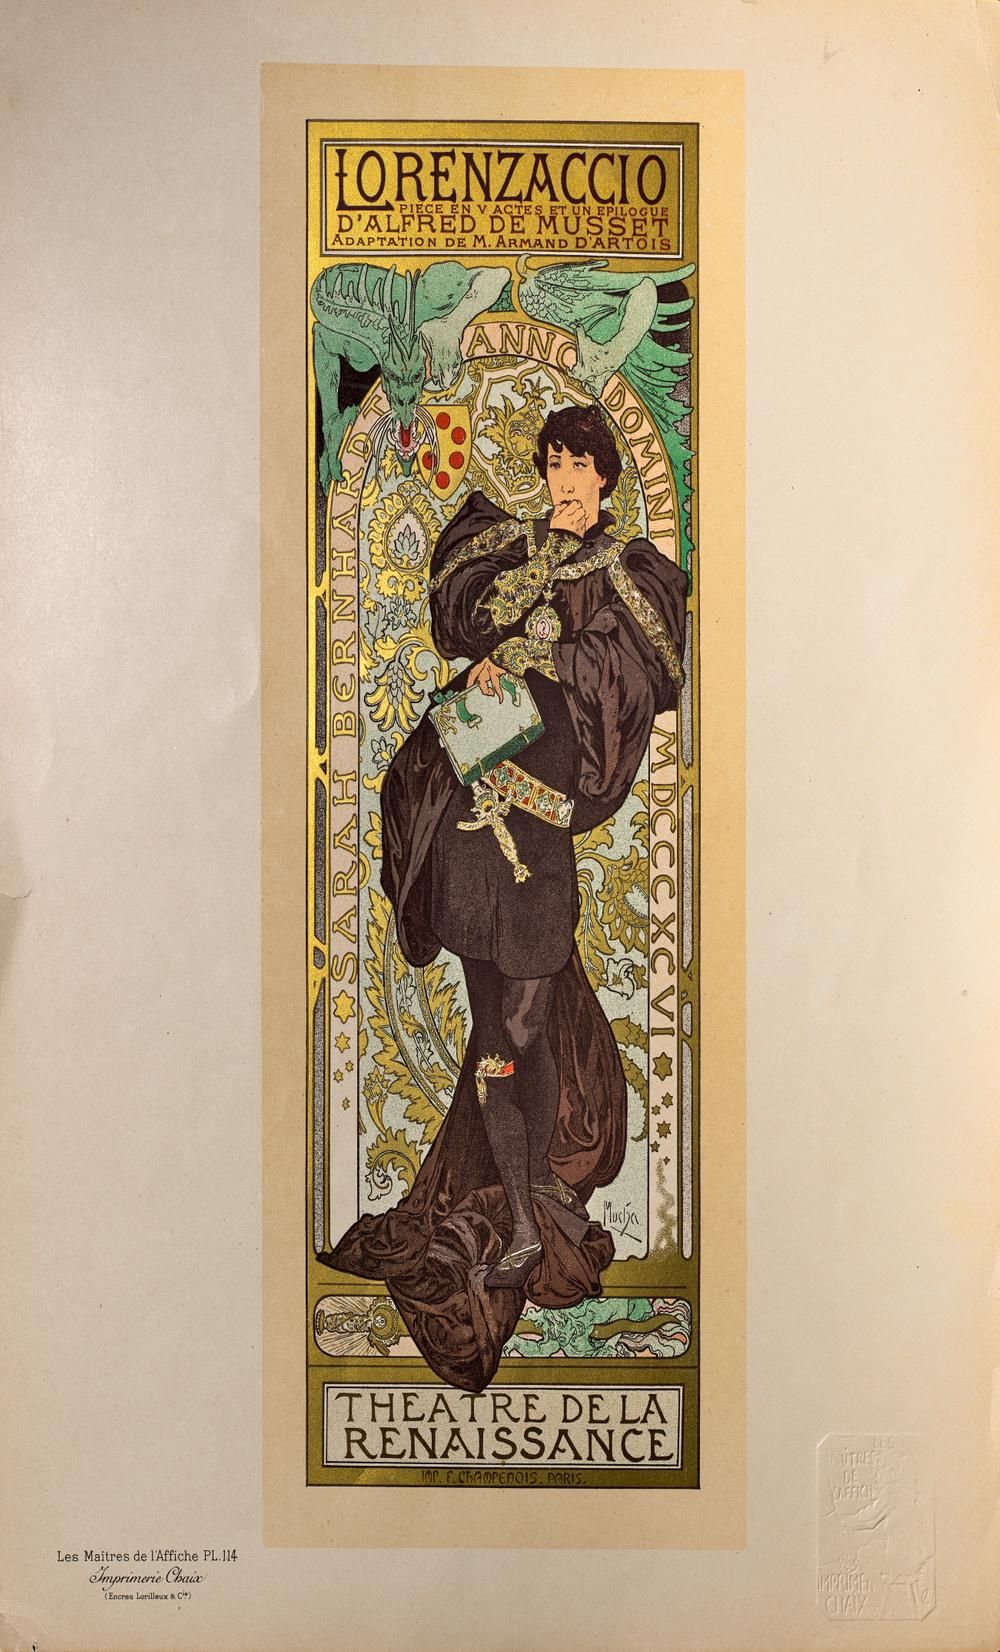 ALPHONSE MUCHA (1860 - 1939) 右下角印有 "Mucha "的字样

彩色石版画

由Imprimerie Chaix印制

图像。3&hellip;